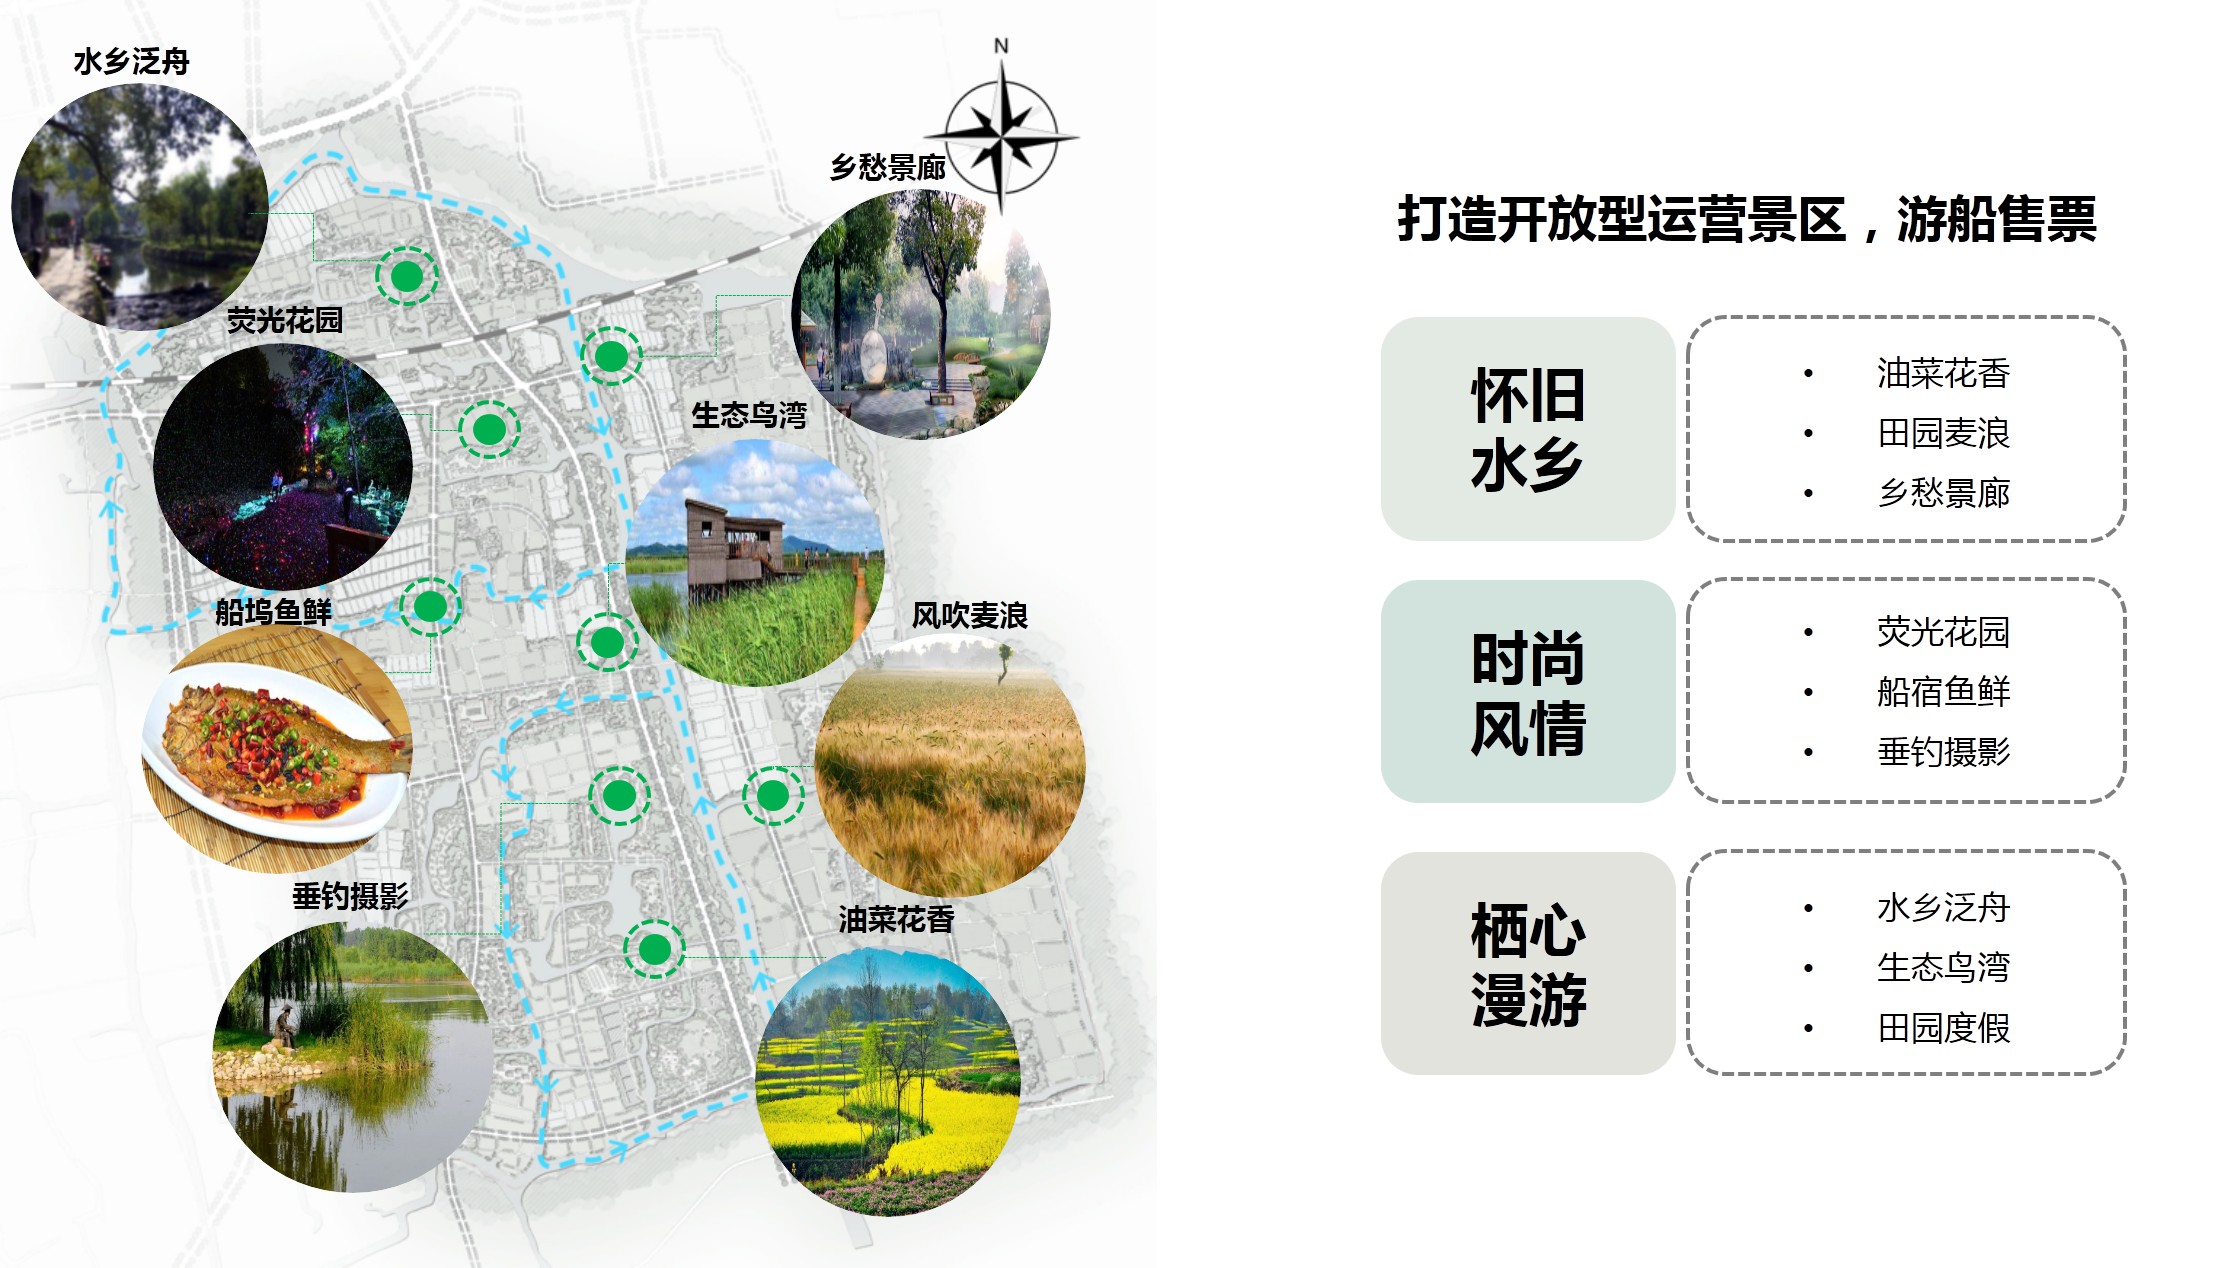 南浔古镇旅游度假区方案策划及总体规划项目